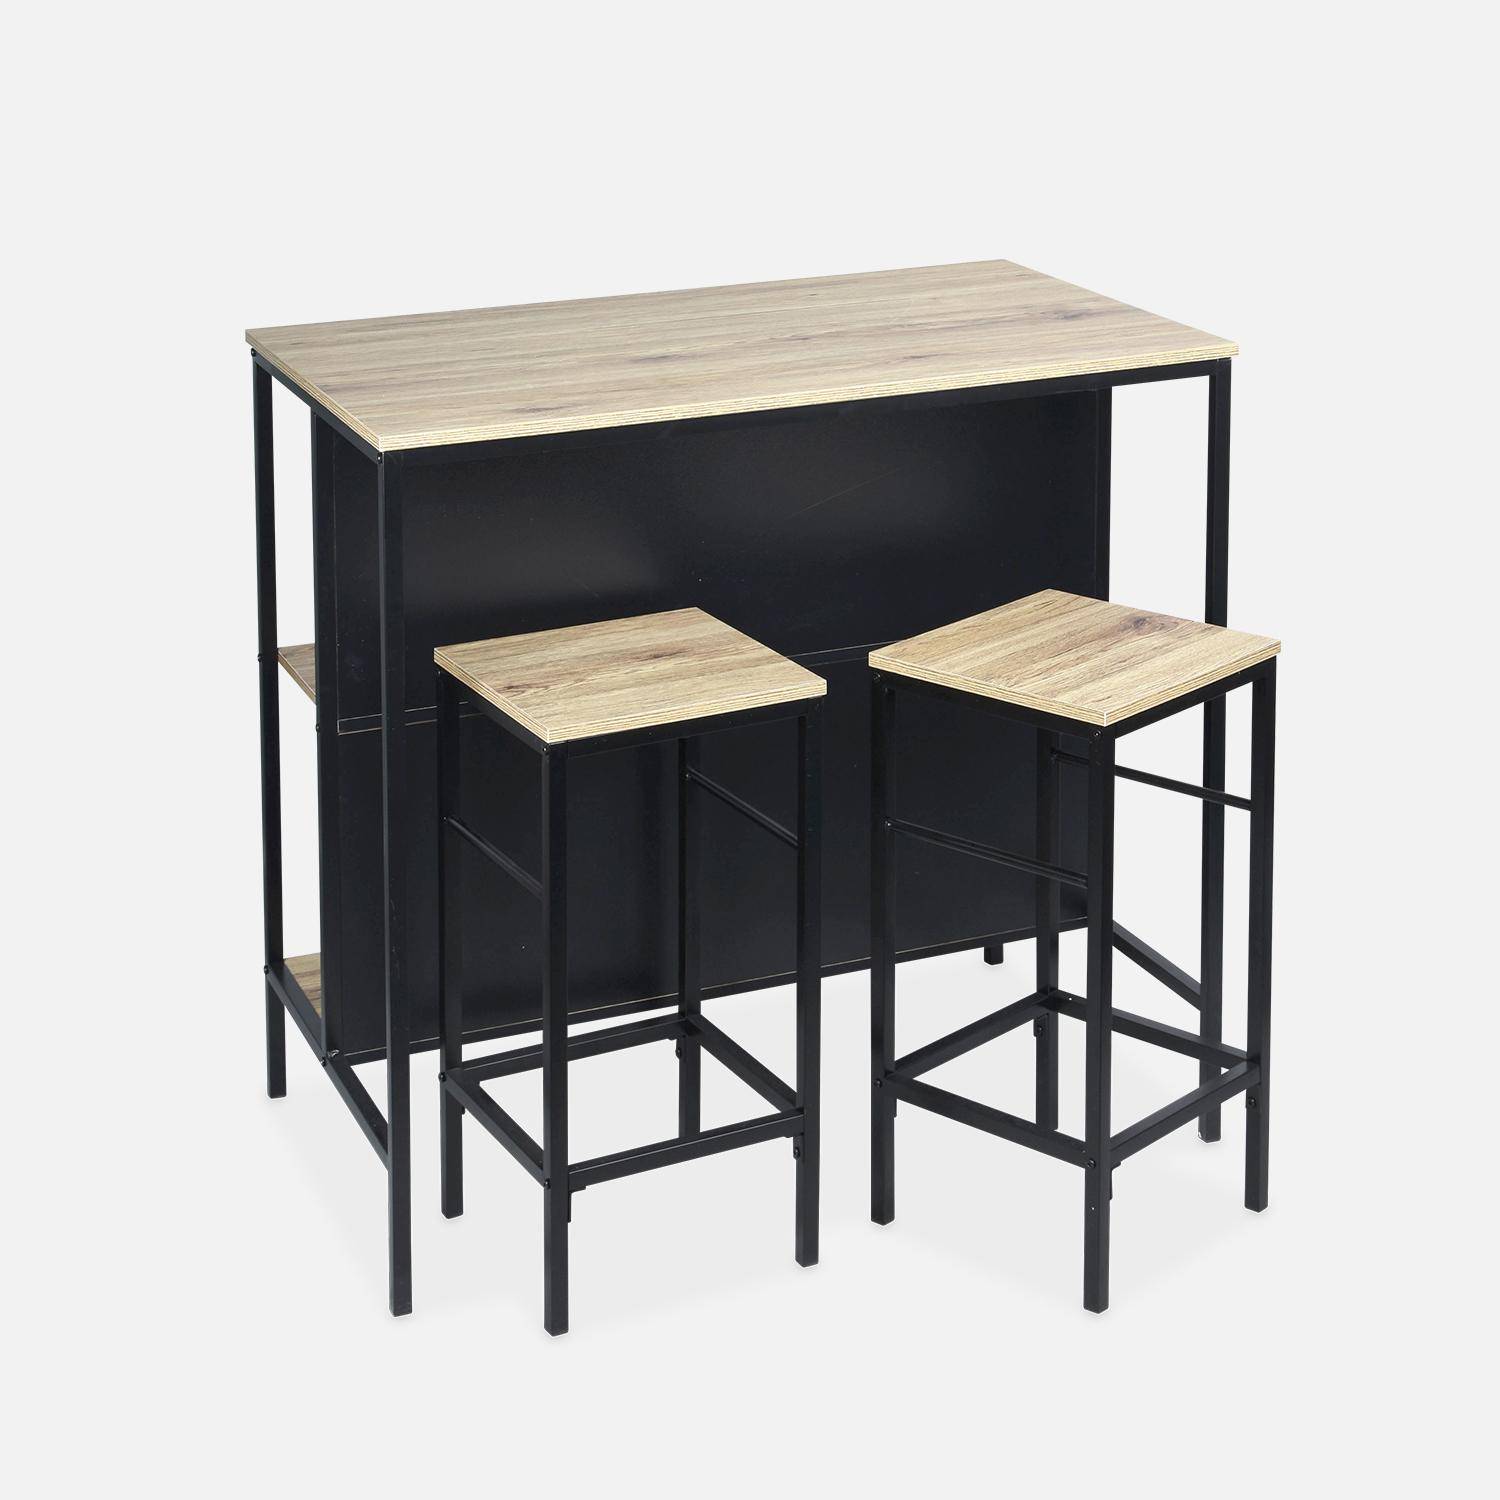 Tavolo alto con due sgabelli e due ripiani, decoro in legno e metallo, soppalco, L 100 x P 60 x H 95 cm Photo3